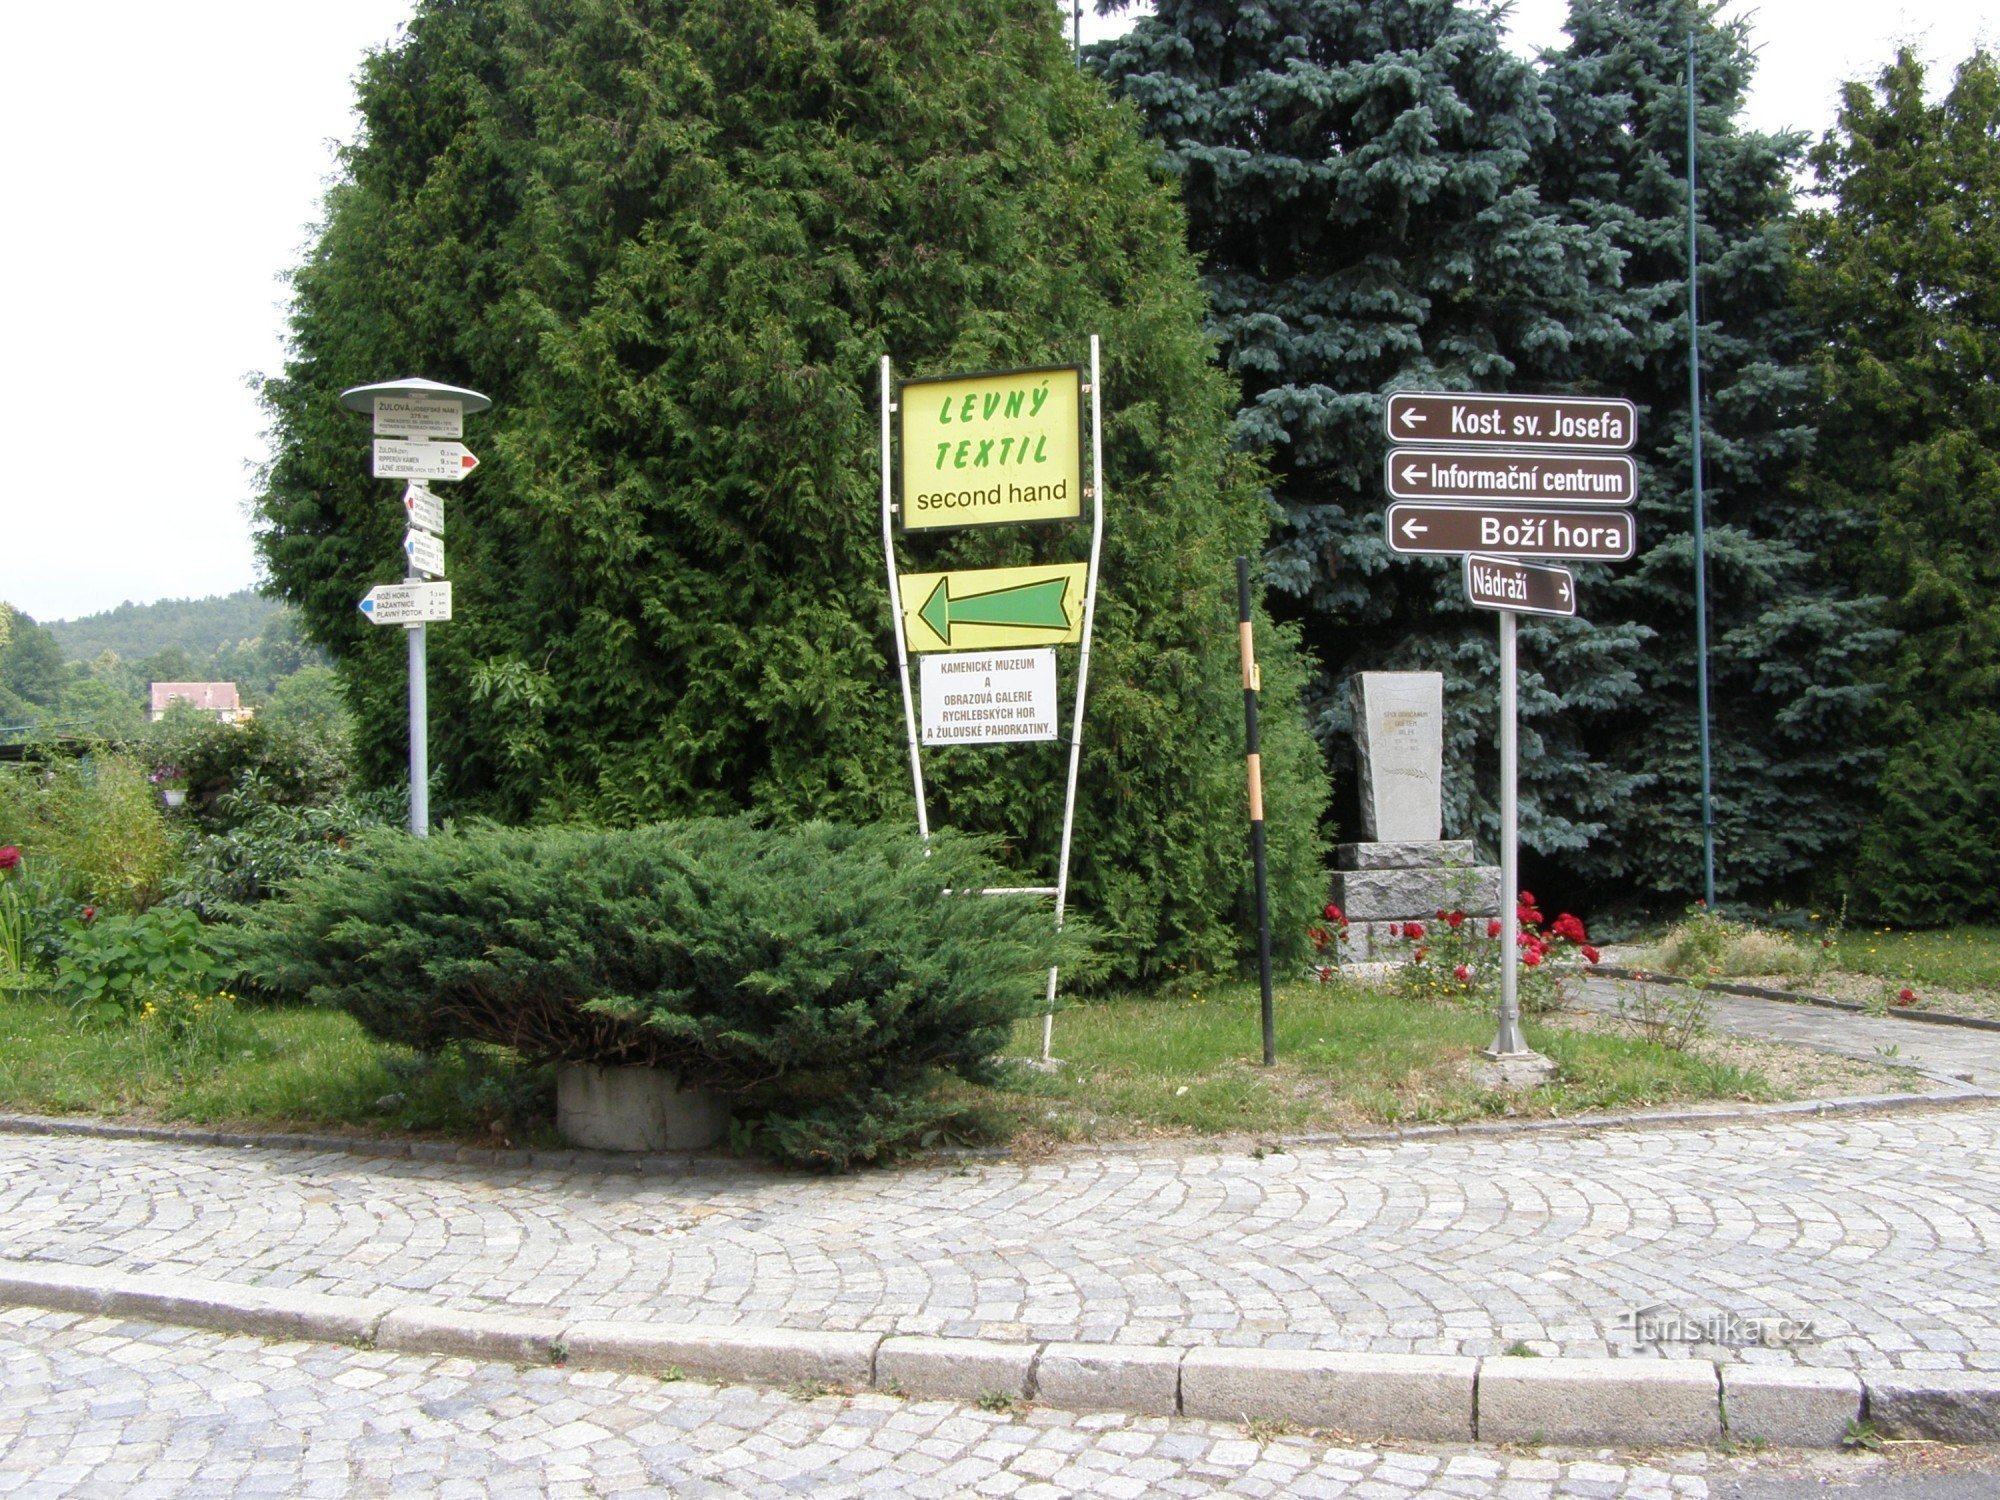 ngã tư du lịch Žulová - Josefské náměstí